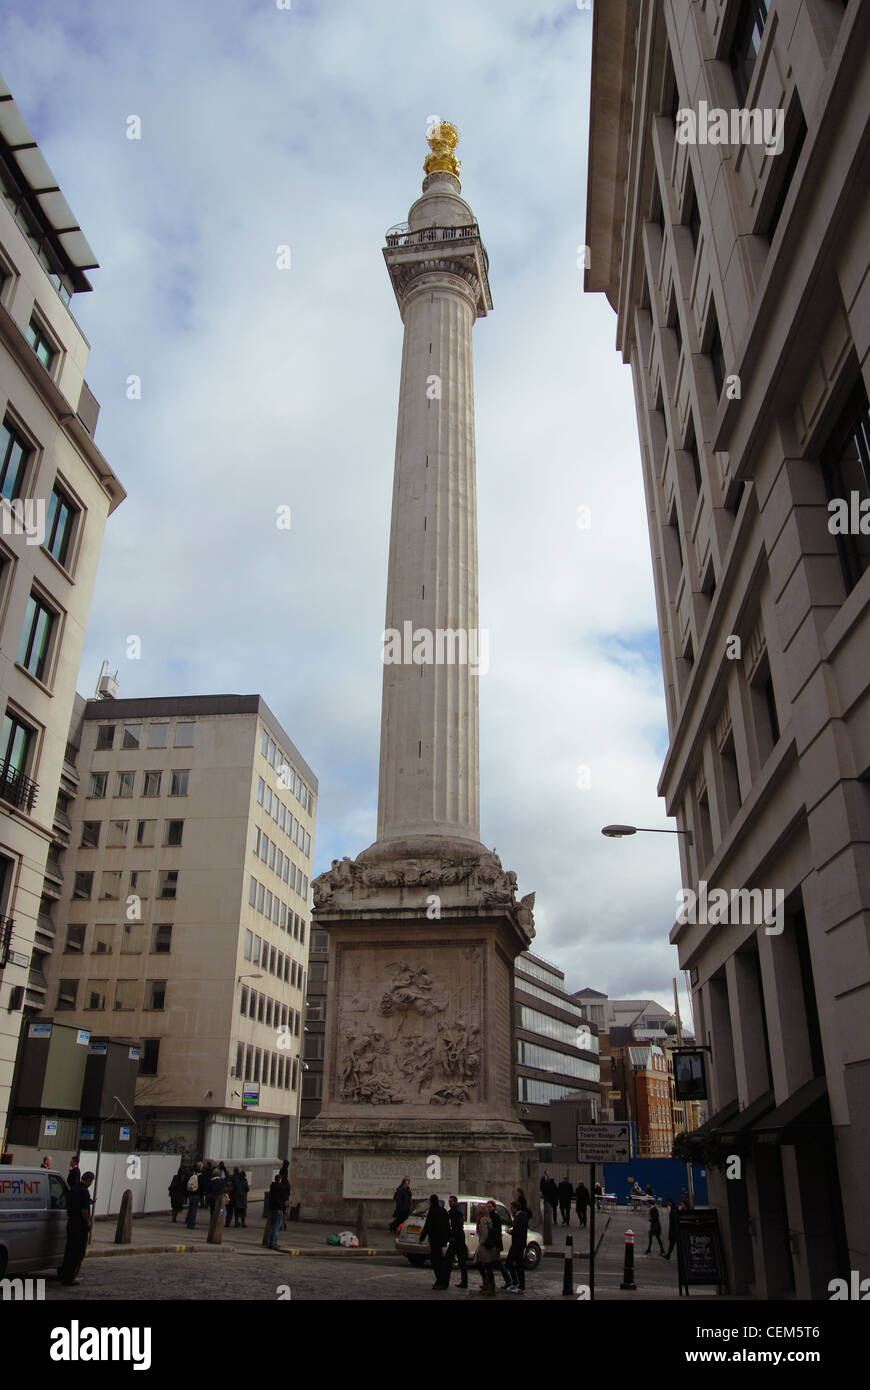 Das Denkmal für den großen Brand von London - London Sightseeing Vereinigtes Königreich Stockfoto